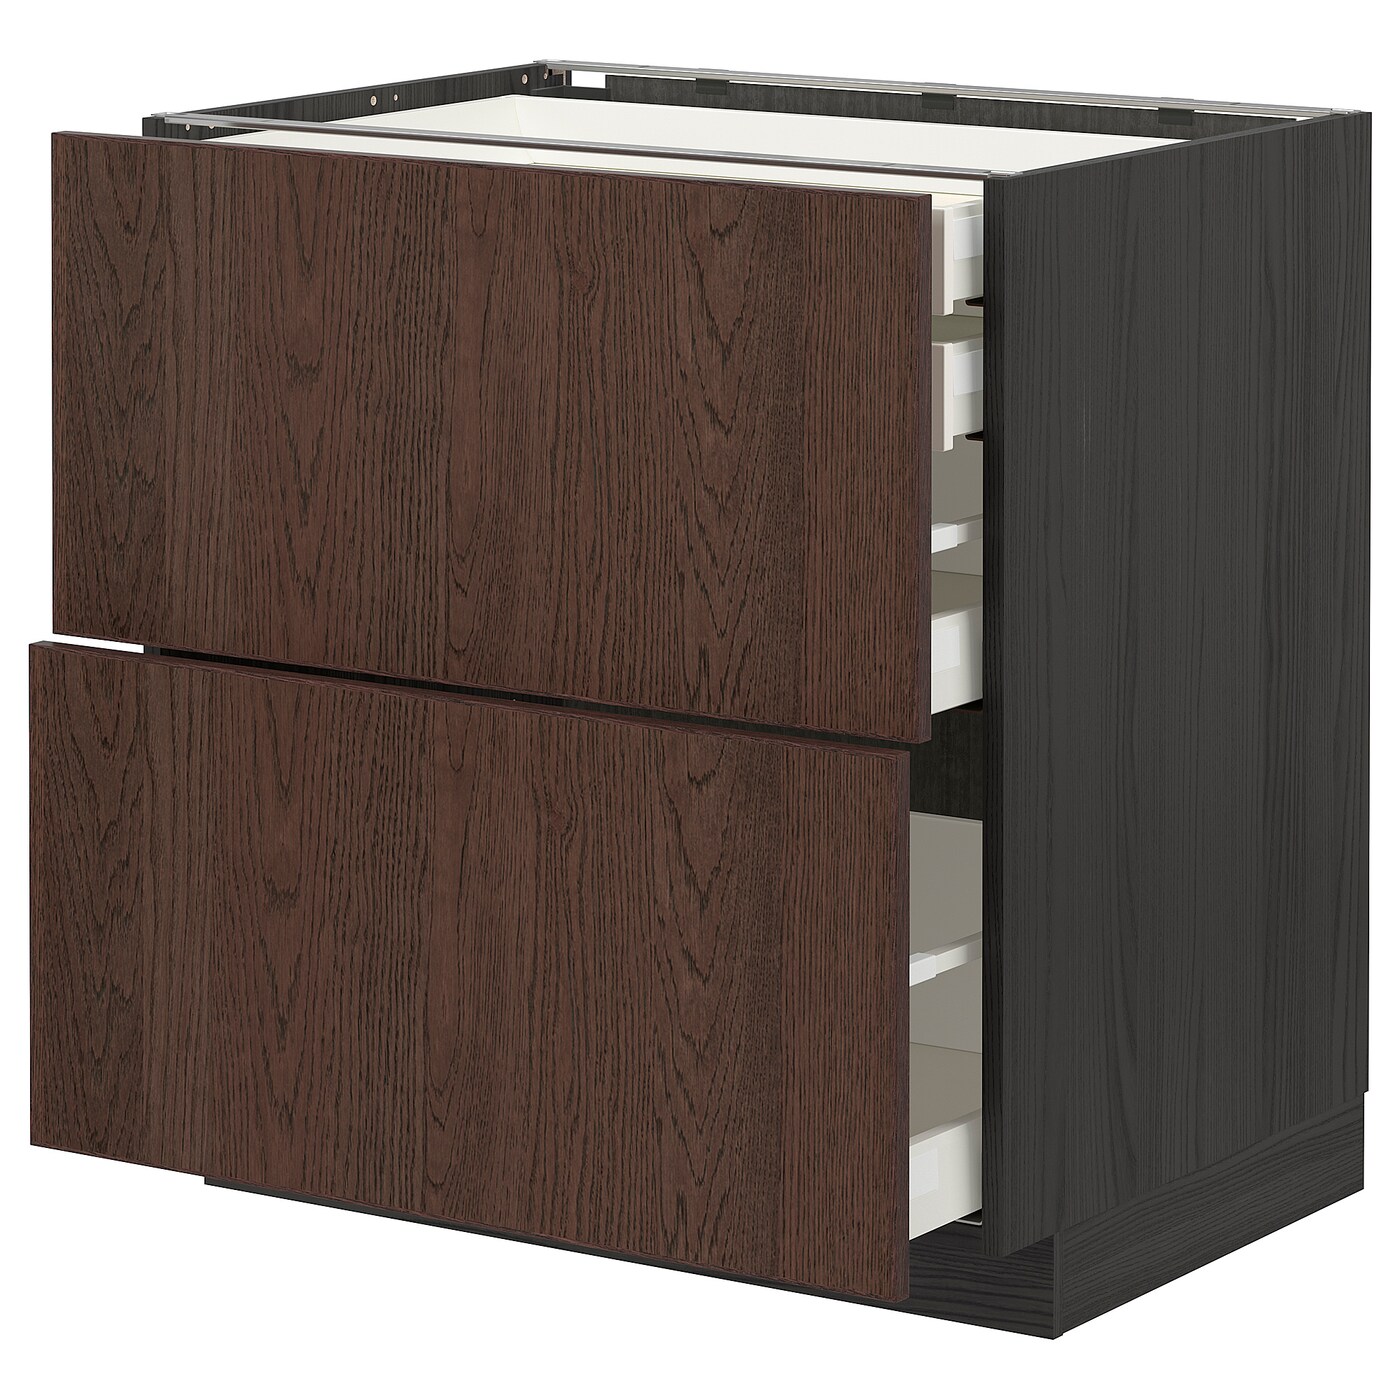 Напольный кухонный шкаф  - IKEA METOD MAXIMERA, 80x60см, черный/коричневый, МЕТОД МАКСИМЕРА ИКЕА